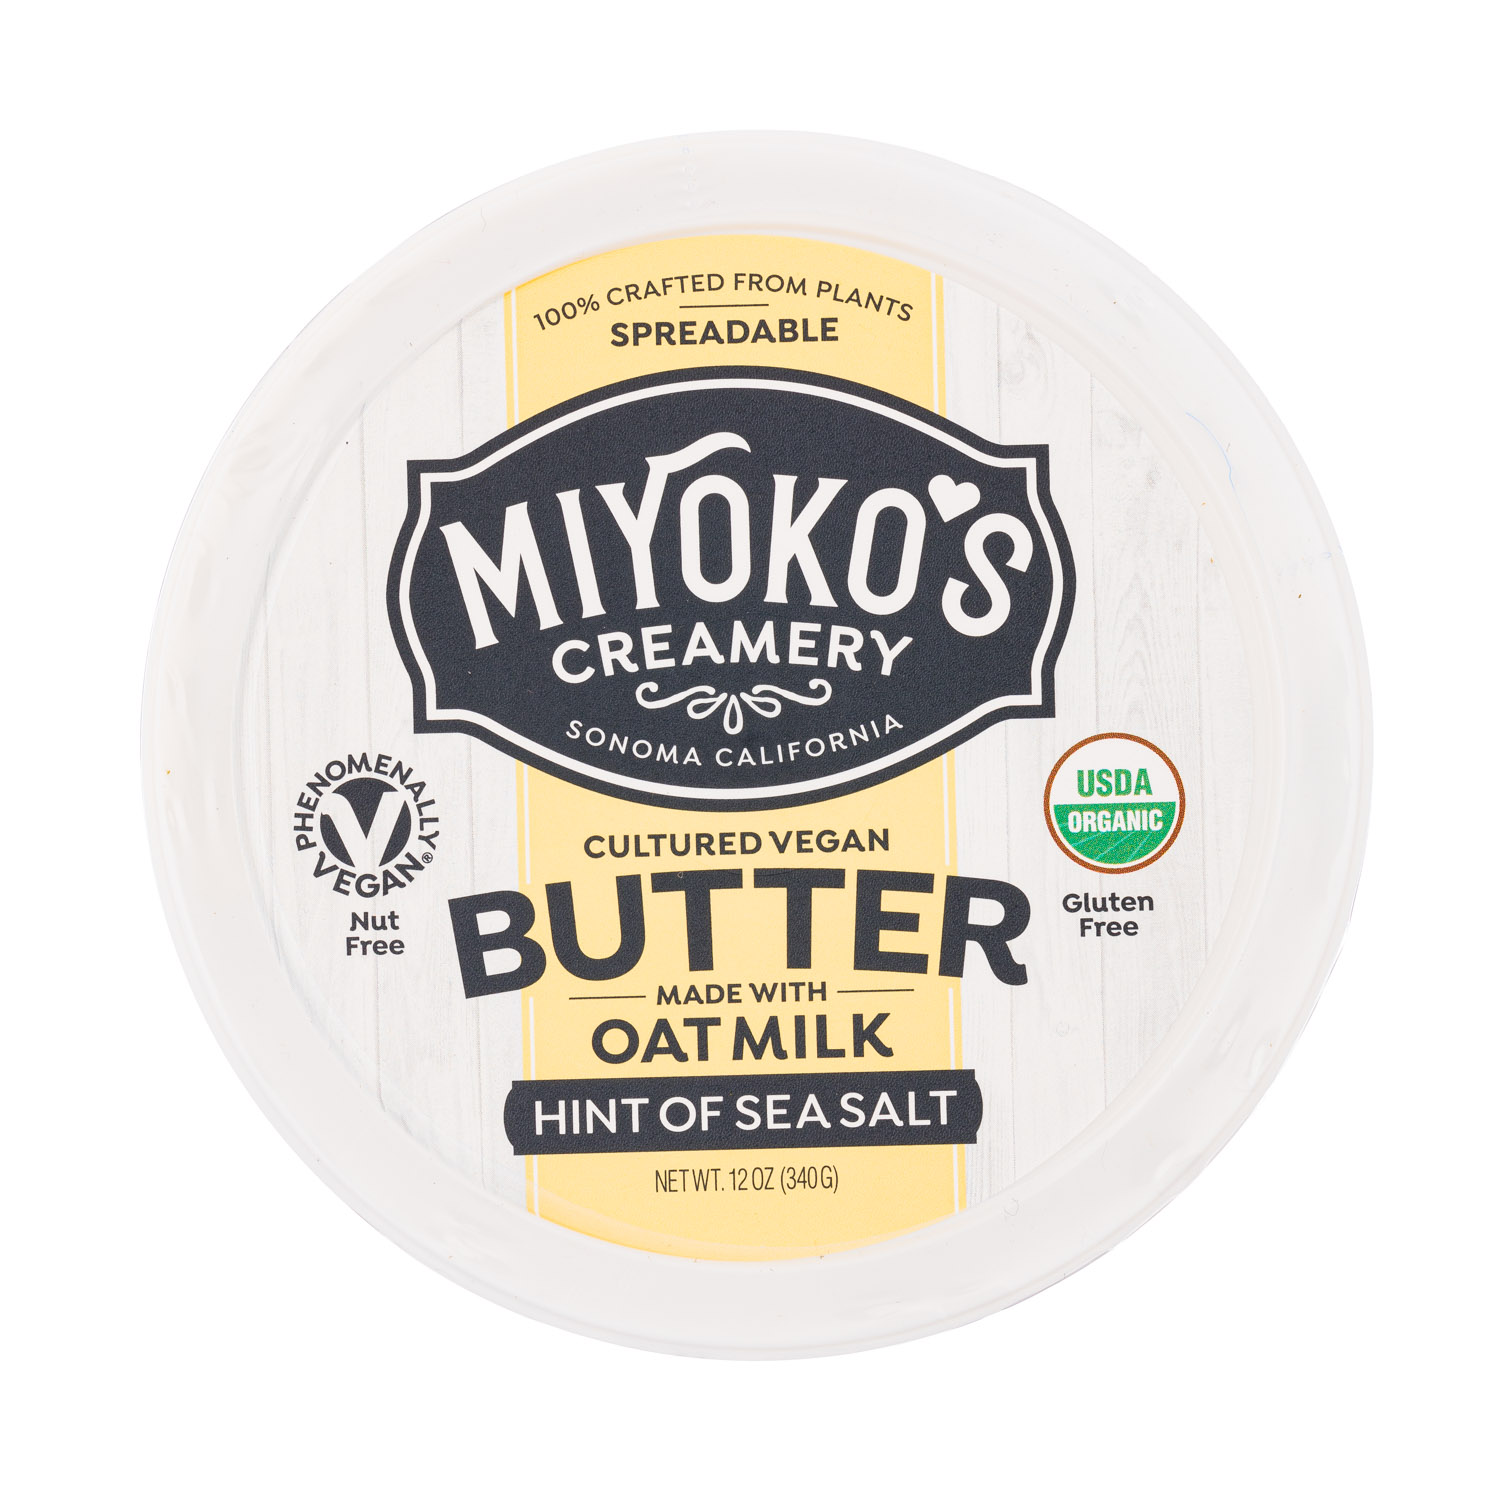 Hint Of Sea Salt Oat Milk Butter 2020